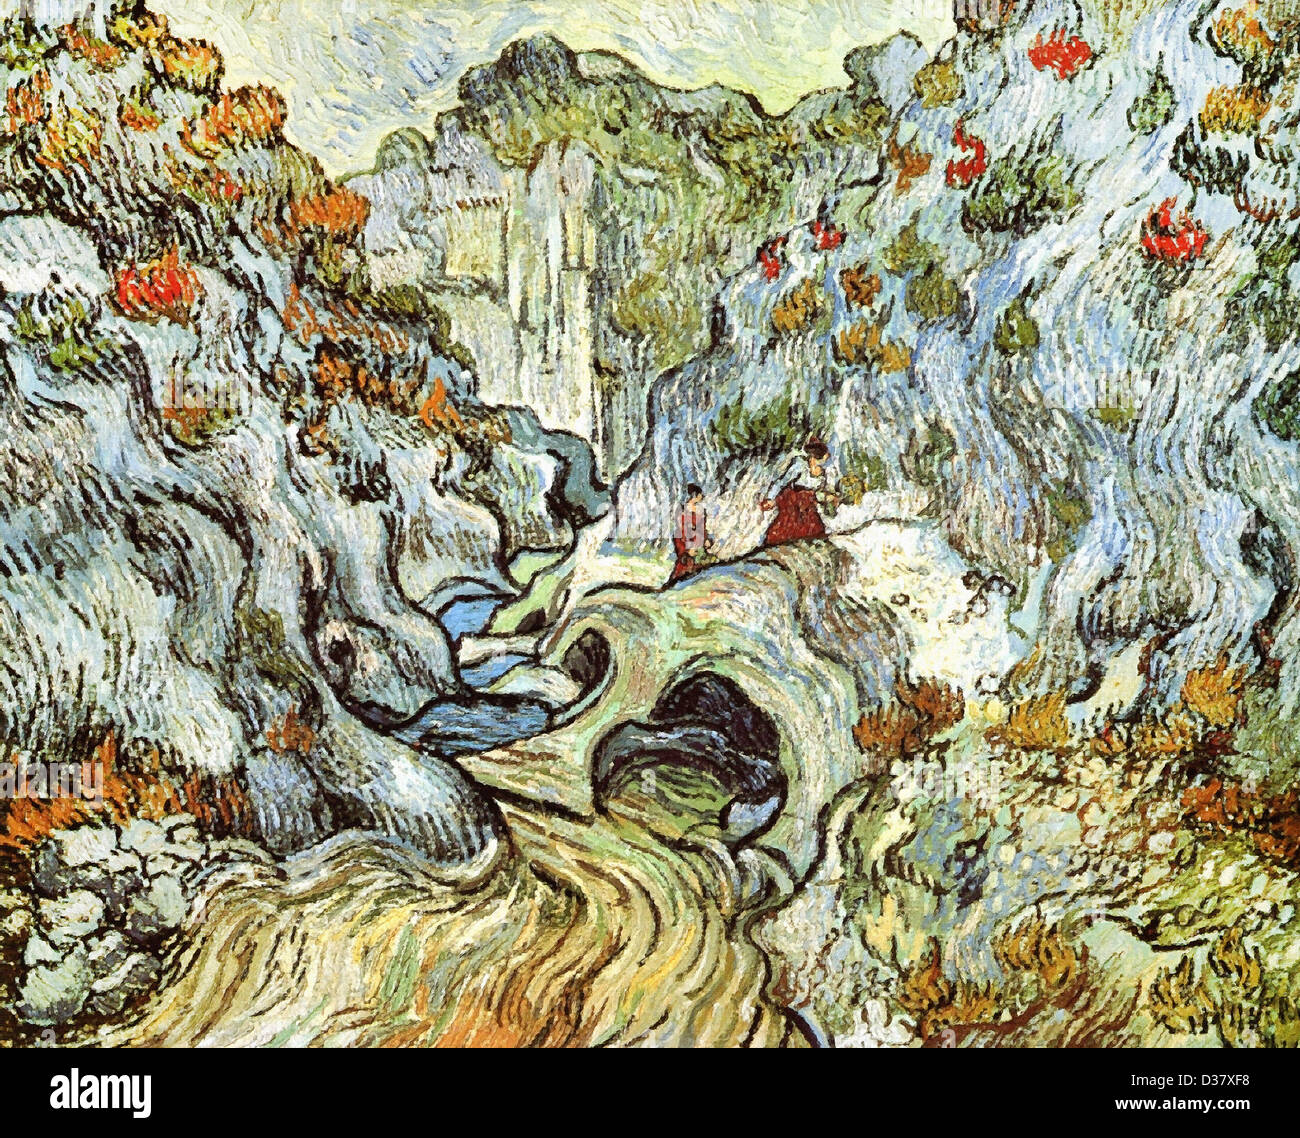 Vincent Van Gogh, die Schlucht des Peyroulets. 1889. Post-Impressionismus. Öl auf Leinwand. Rijksmuseum Kröller-Müller, Otterlo Stockfoto